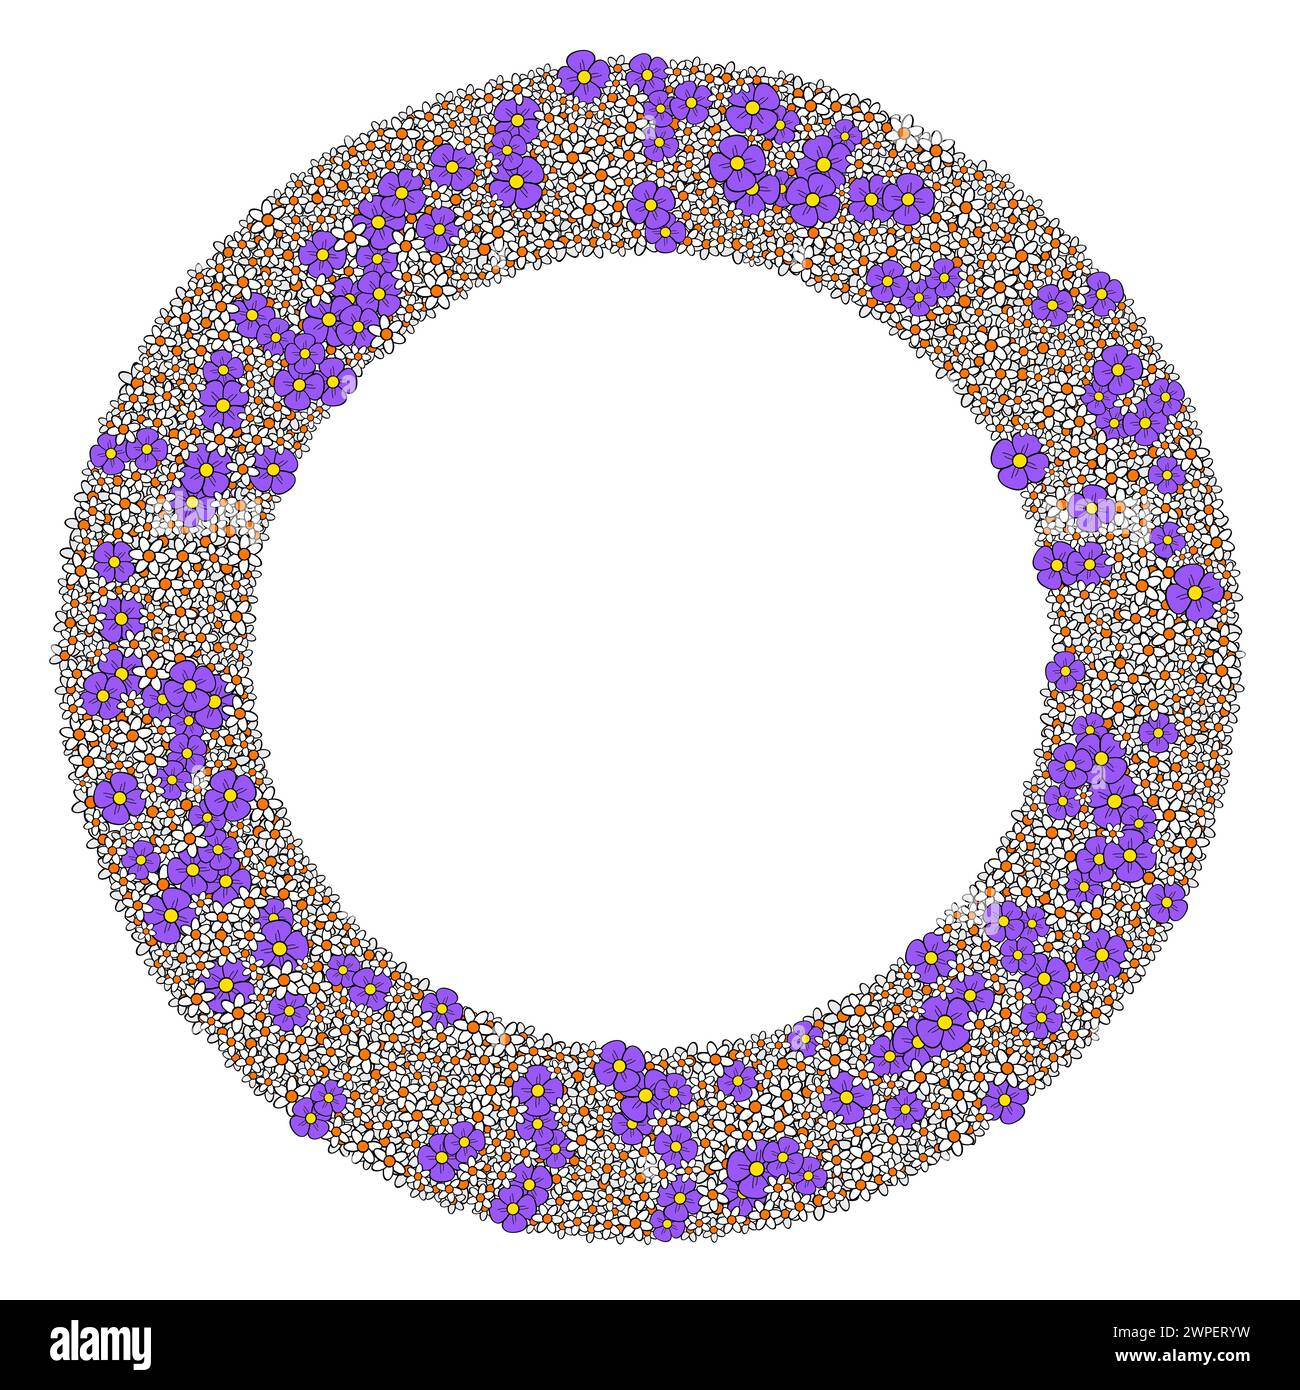 Blumenkranz aus zahlreichen kleinen weißen und violetten Blüten. Kreisförmiger Rahmen mit vielen zufällig angeordneten Blüten. Isolierte Abbildung. Stockfoto